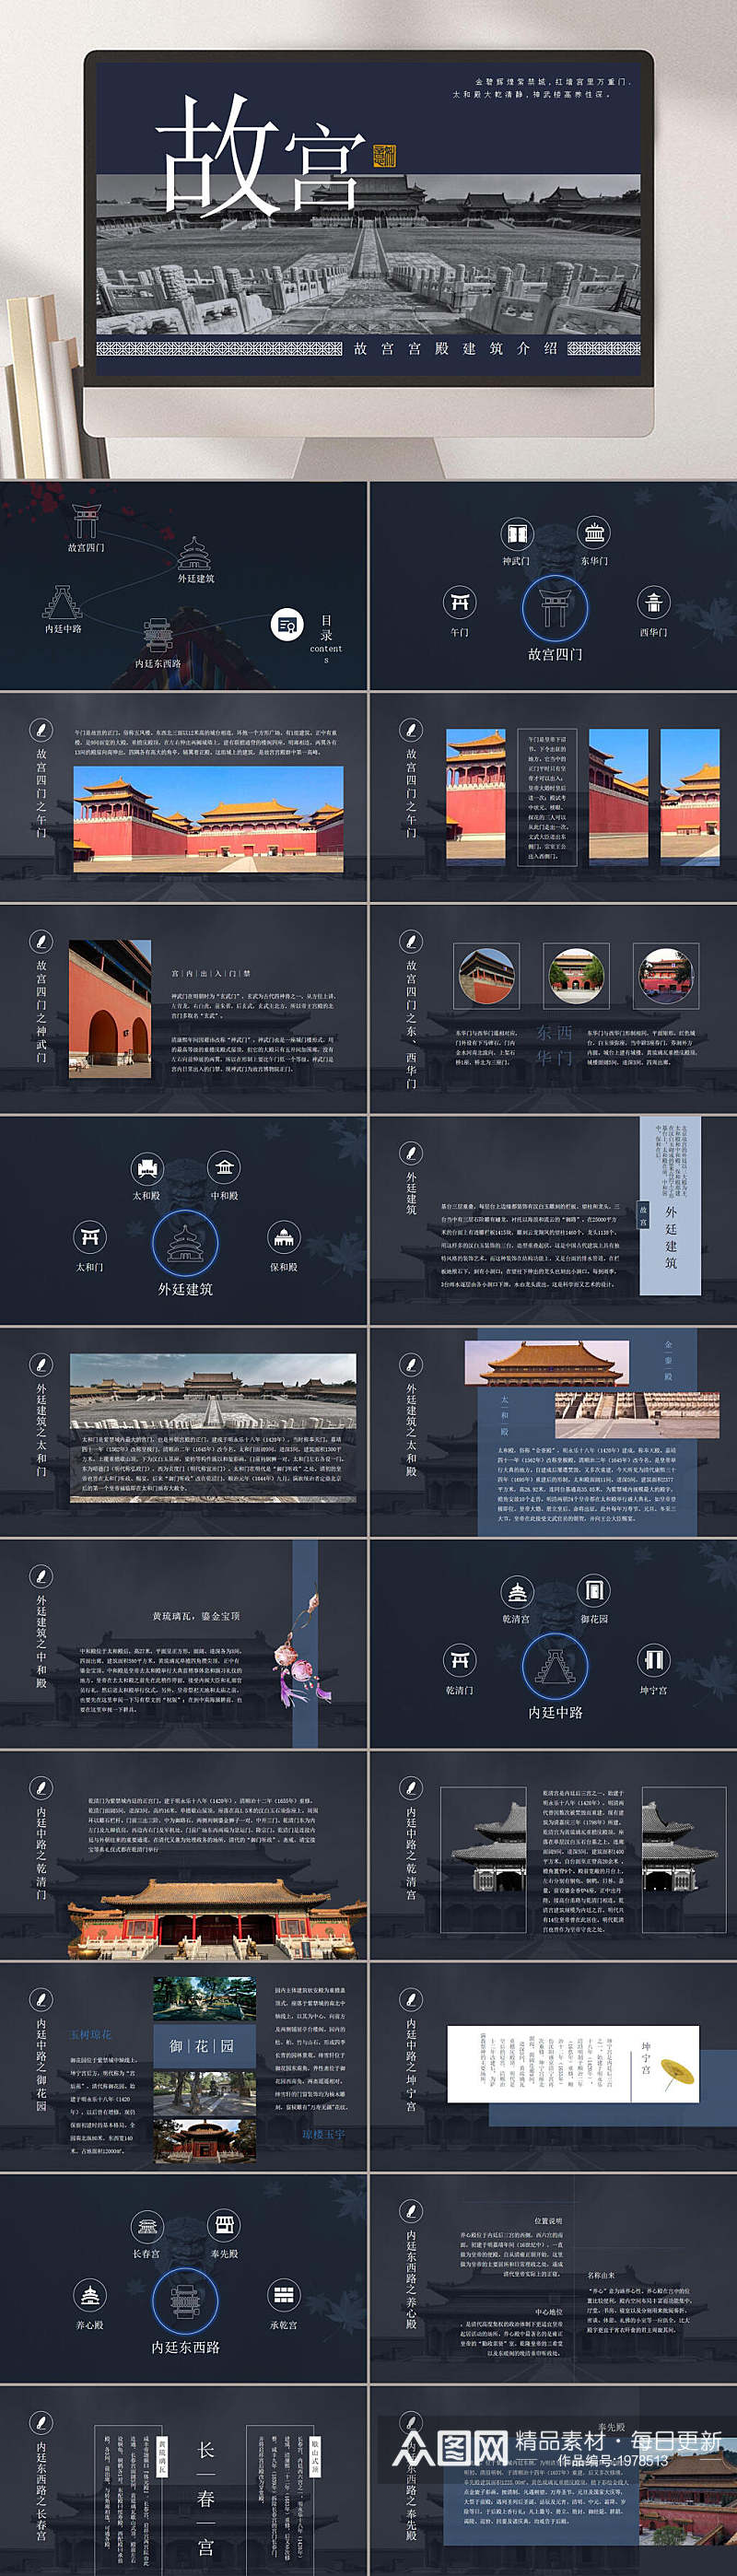 中国风黑色故宫宫殿建筑介绍PPT素材